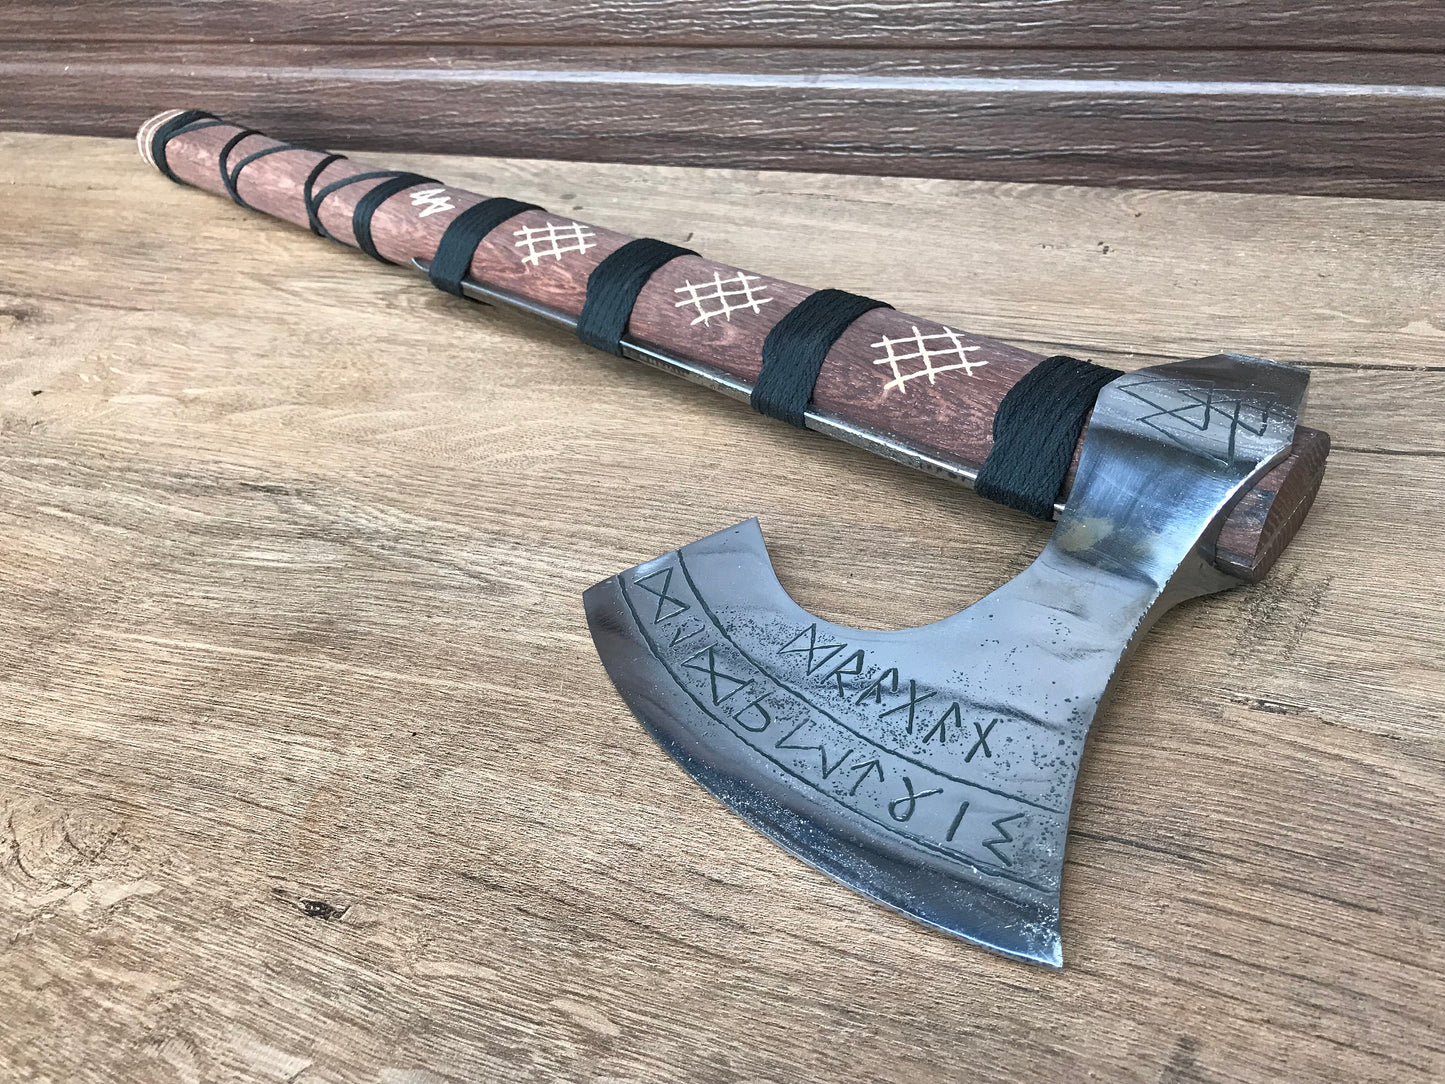 Runic axe, pagan axe, axe with runes, personalized axe, custom axe, axe with initials, viking axe, bearded axe, Norse axe, viking weapon